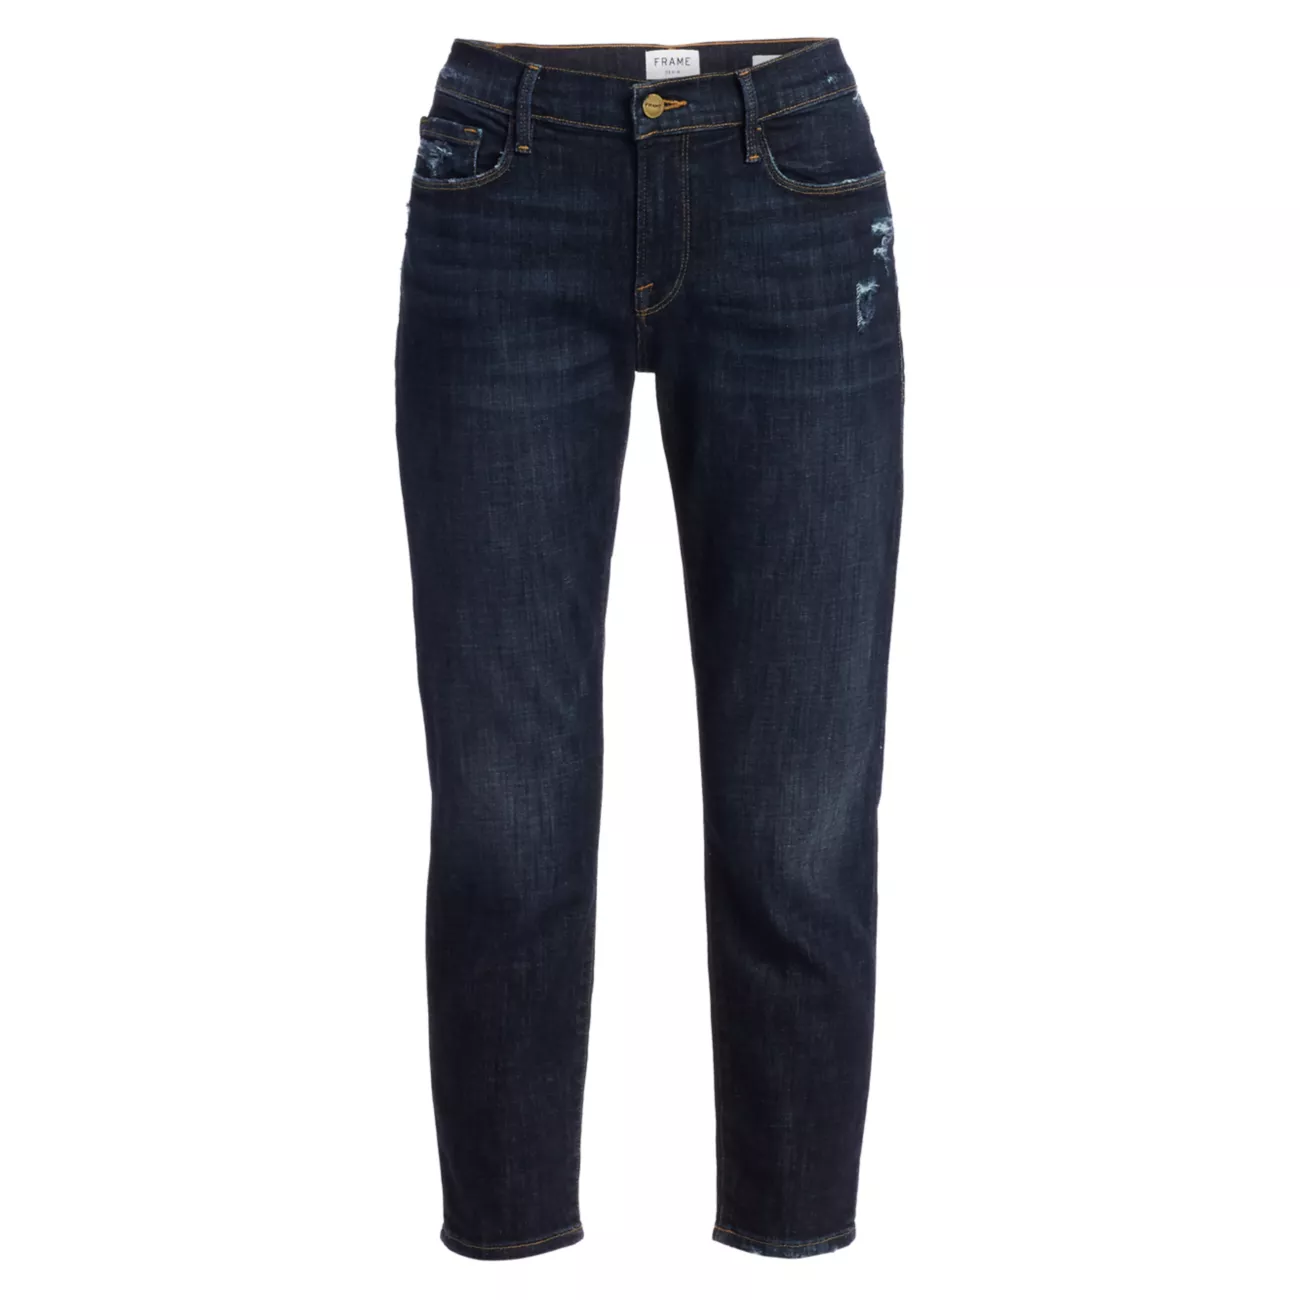 Укороченные джинсы Le Garçon со средней посадкой и закатанными манжетами FRAME